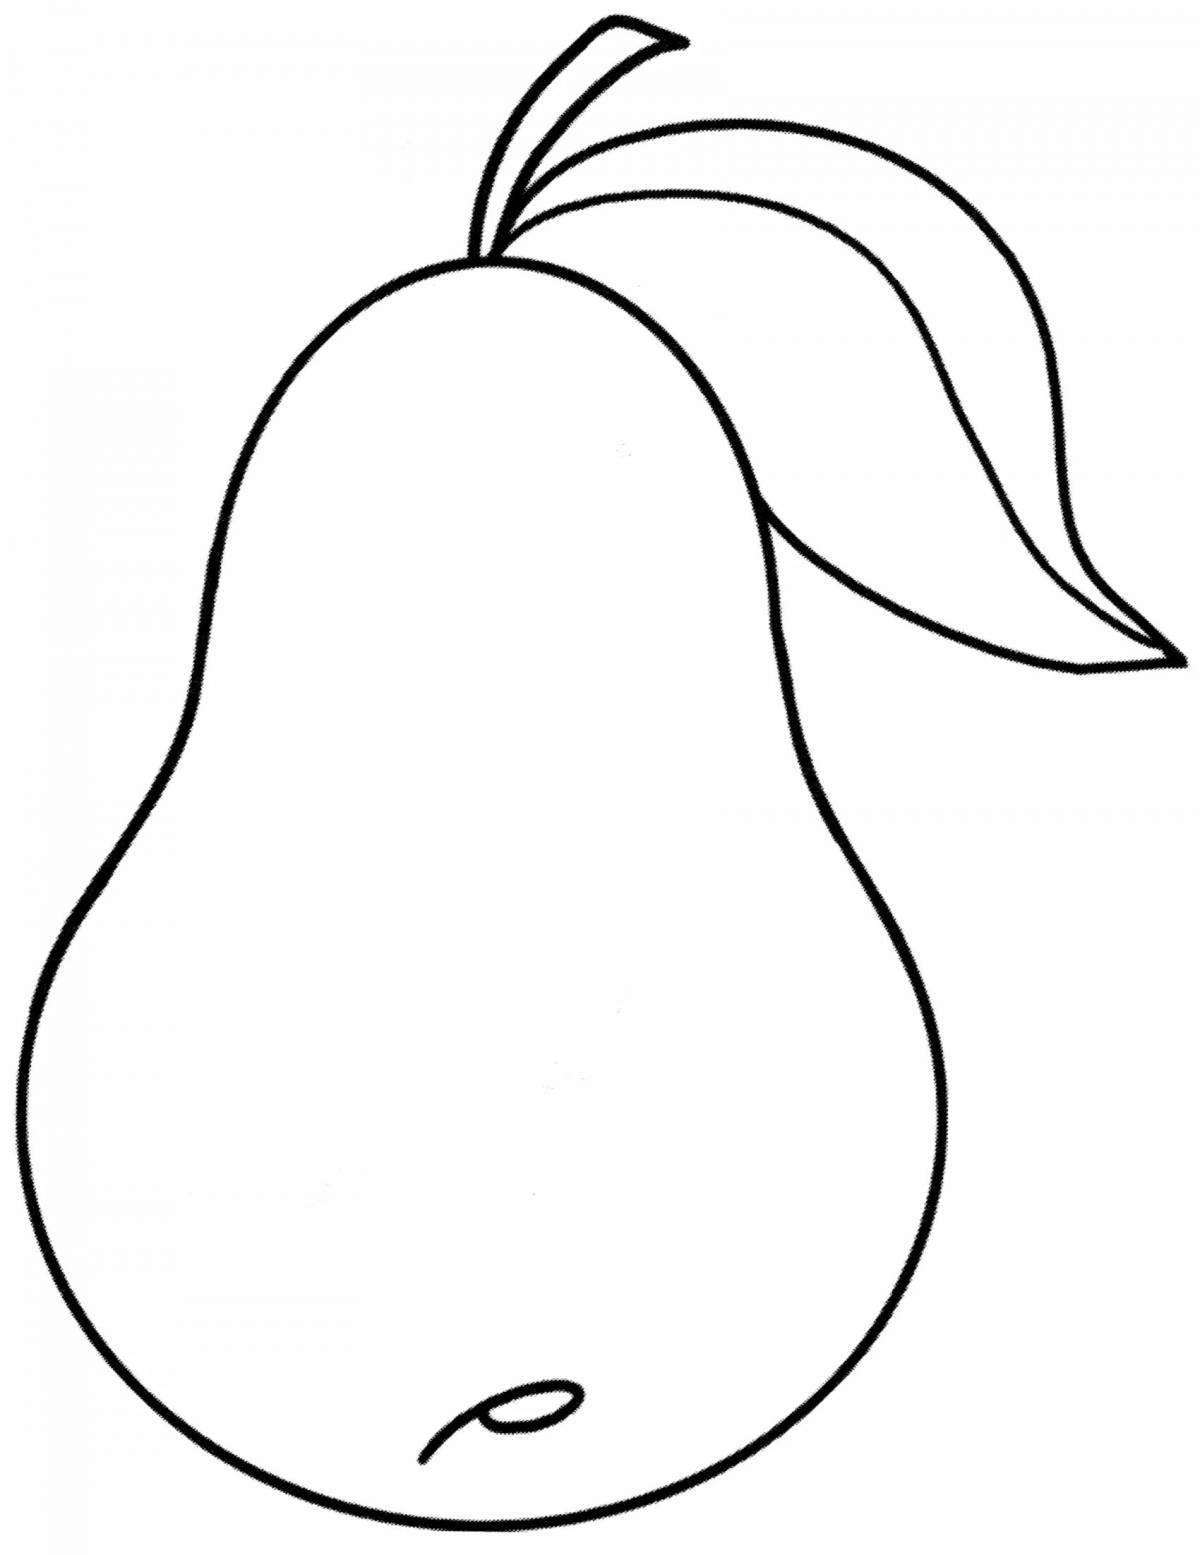 Gourmet apple pear coloring book